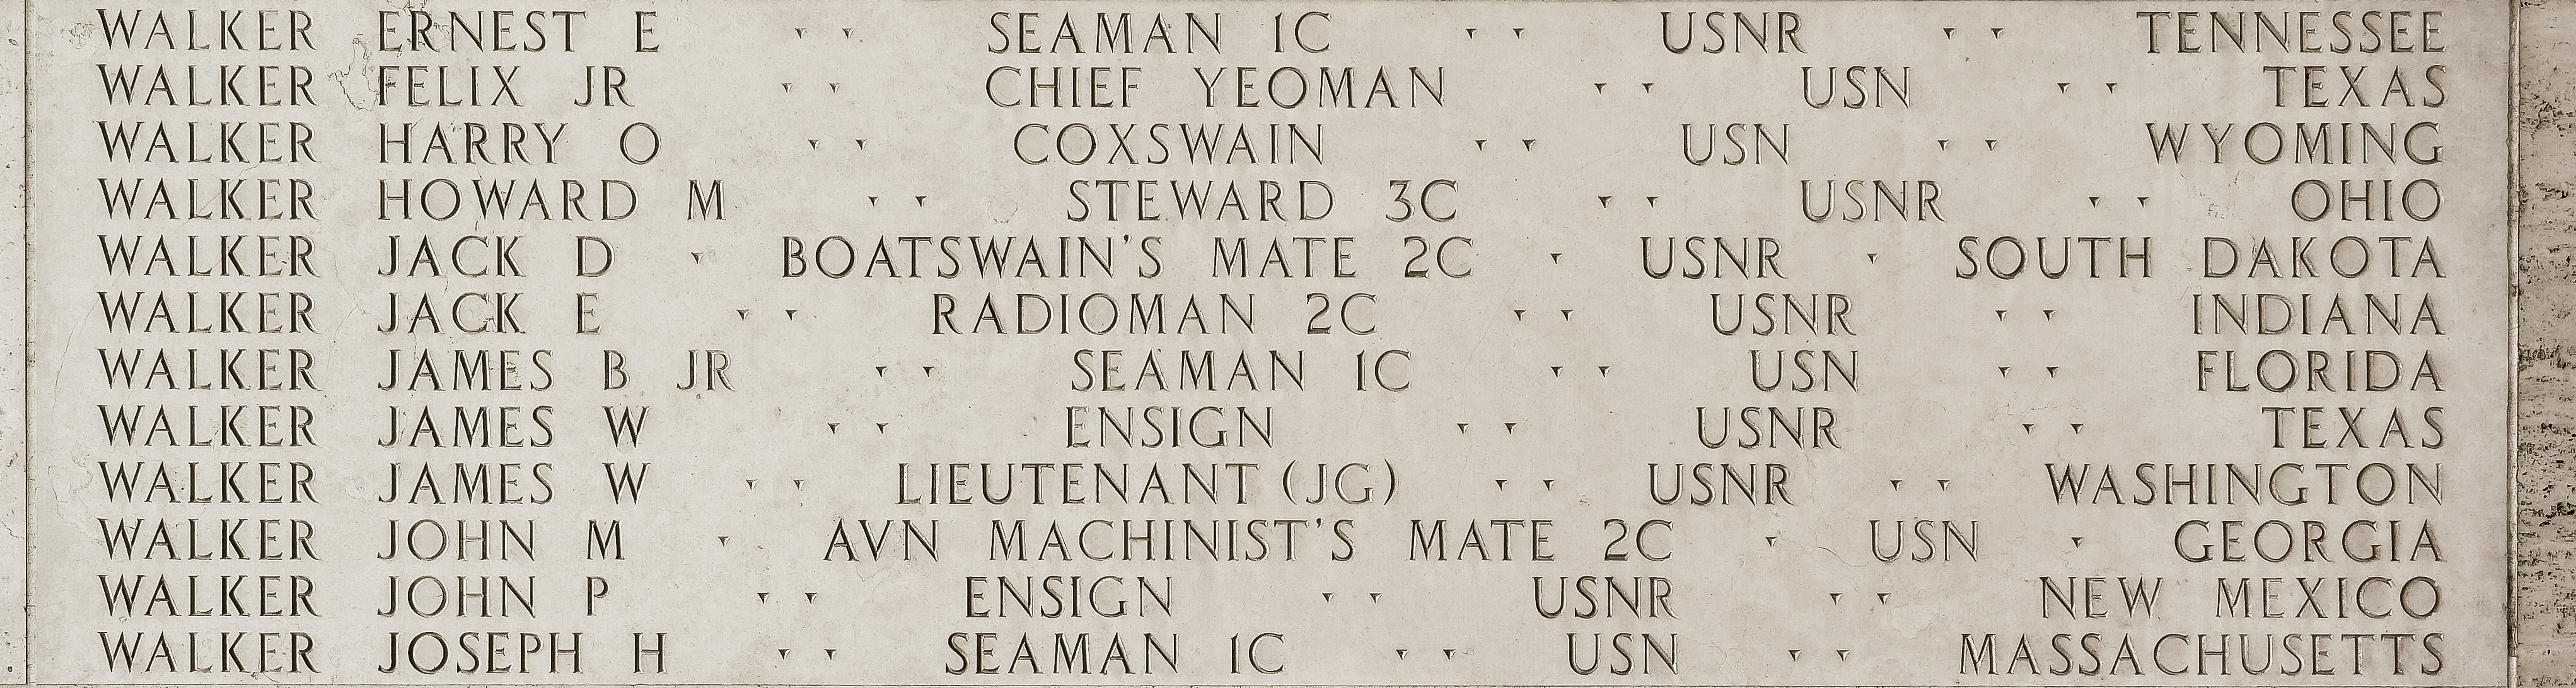 Ernest E. Walker, Seaman First Class